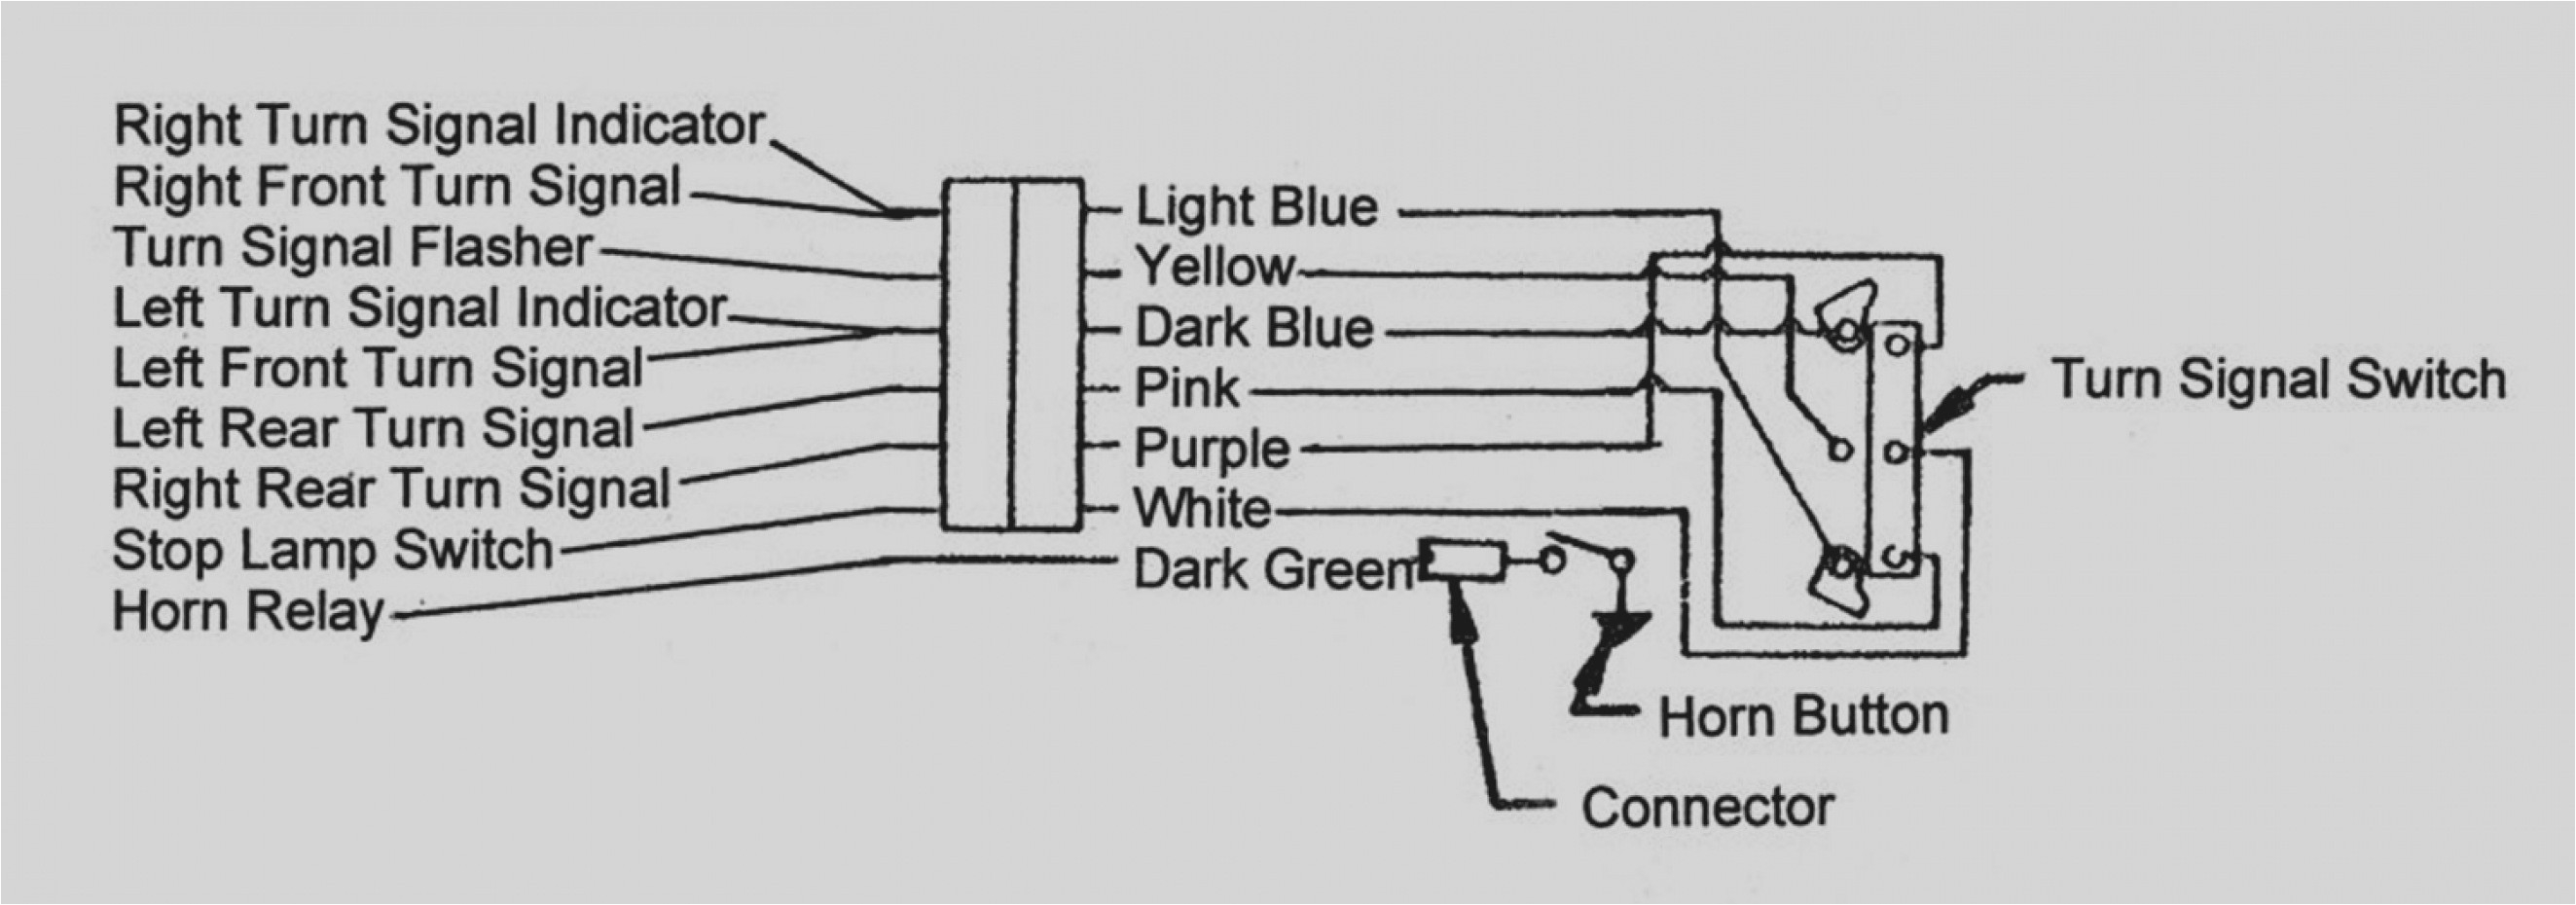 1969 chevy truck turn signal wiring diagram schema wiring diagram 1988 chevy turn signal wiring diagram